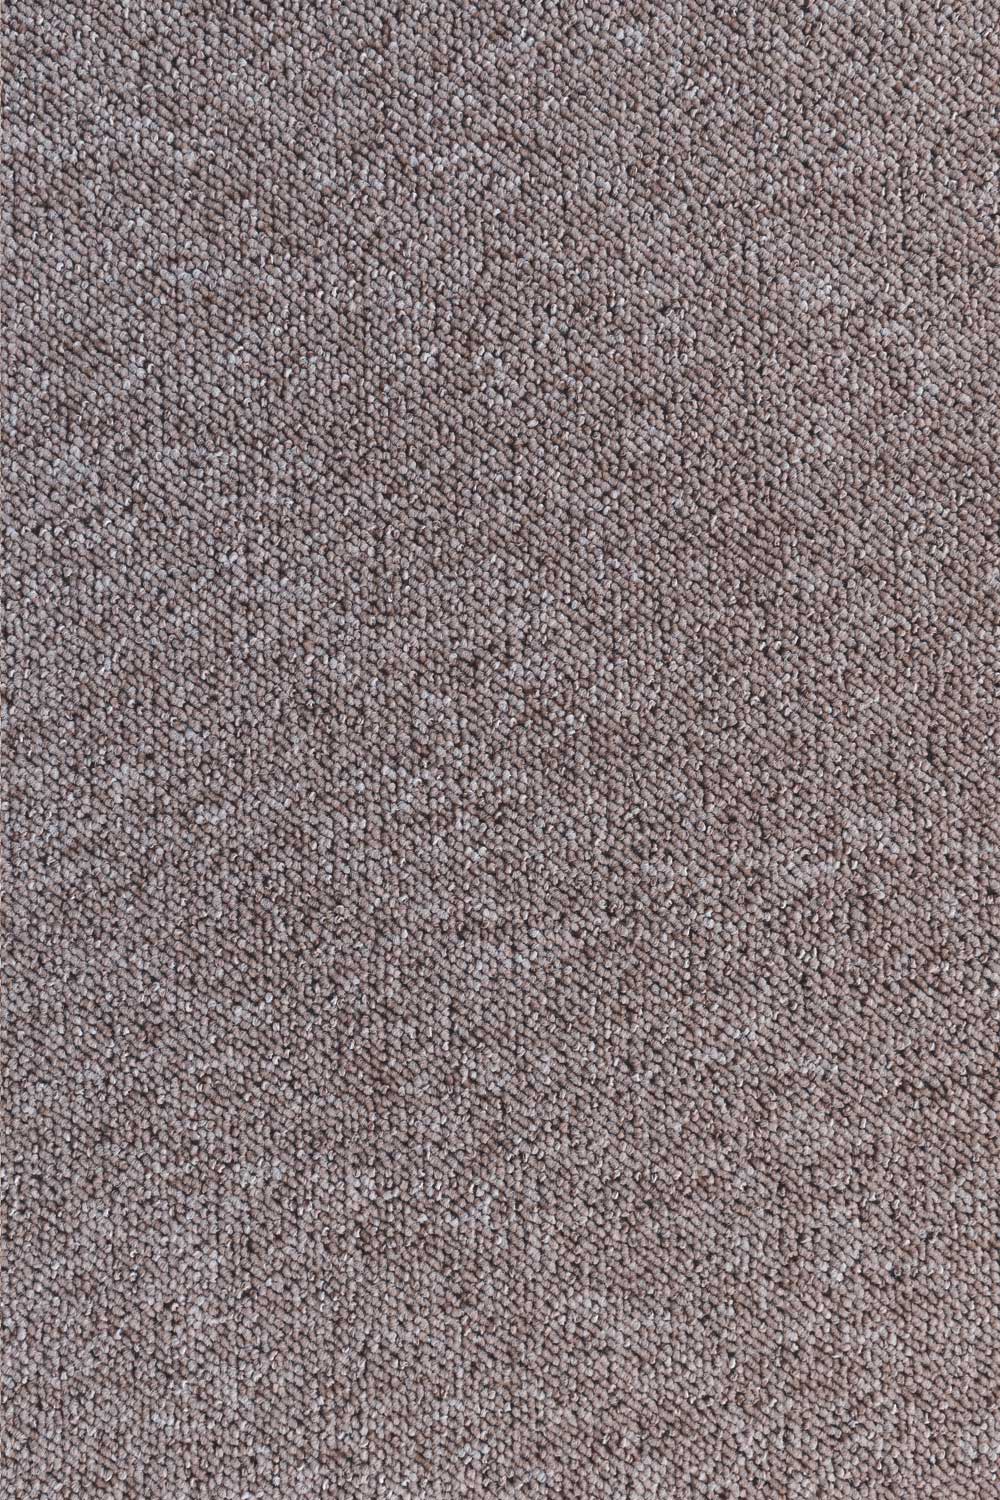 Metrážny koberec Robson 9623